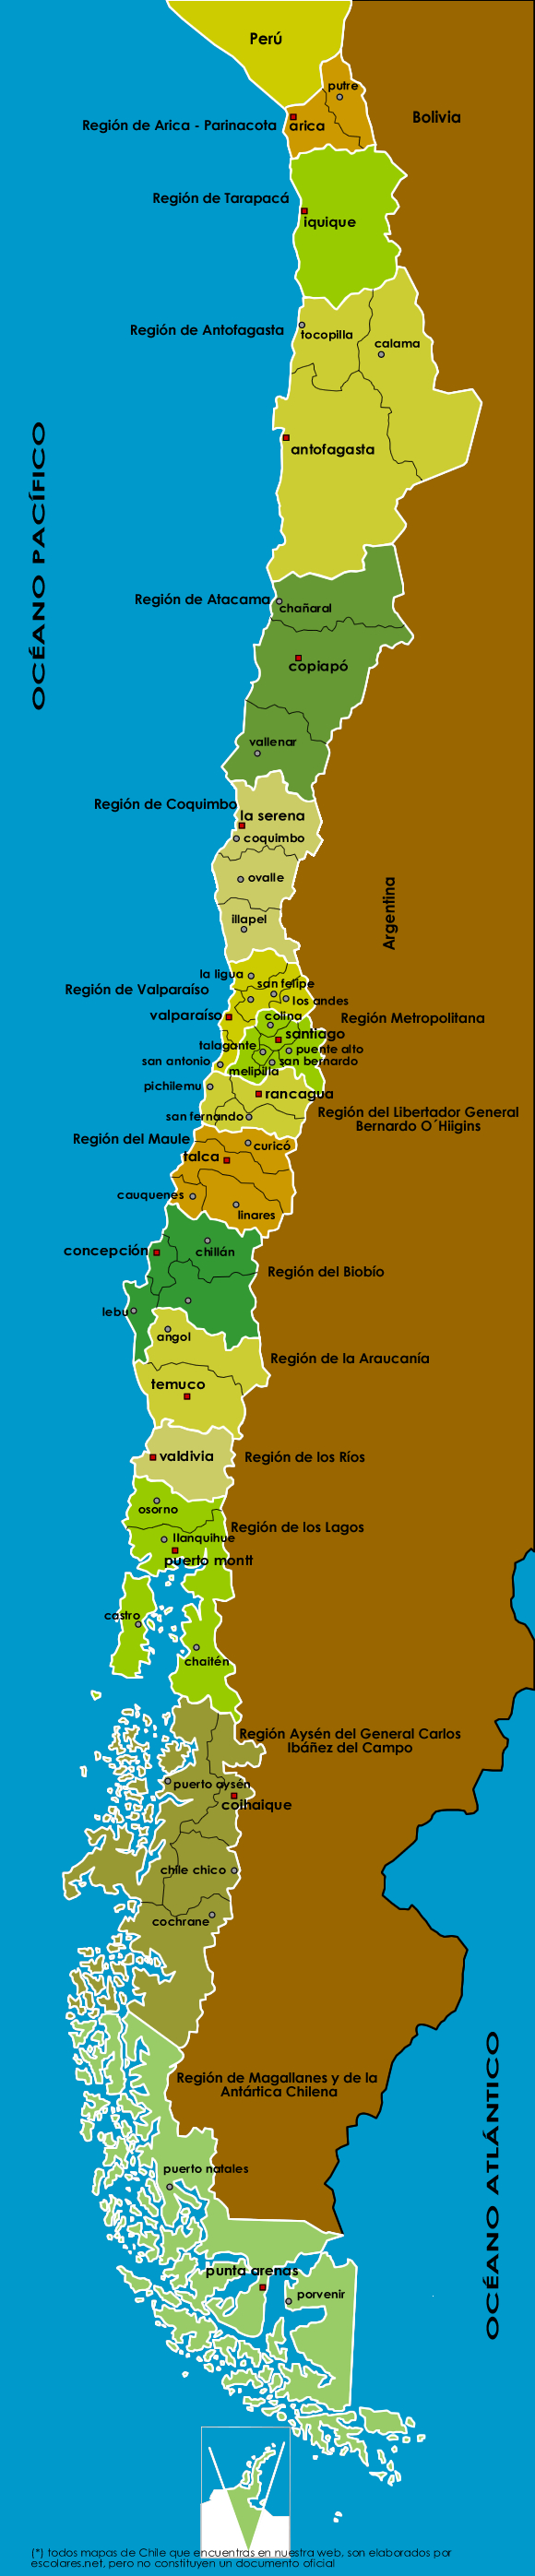 Mapa Político de Chile Actualizado con sus 15 Regiones